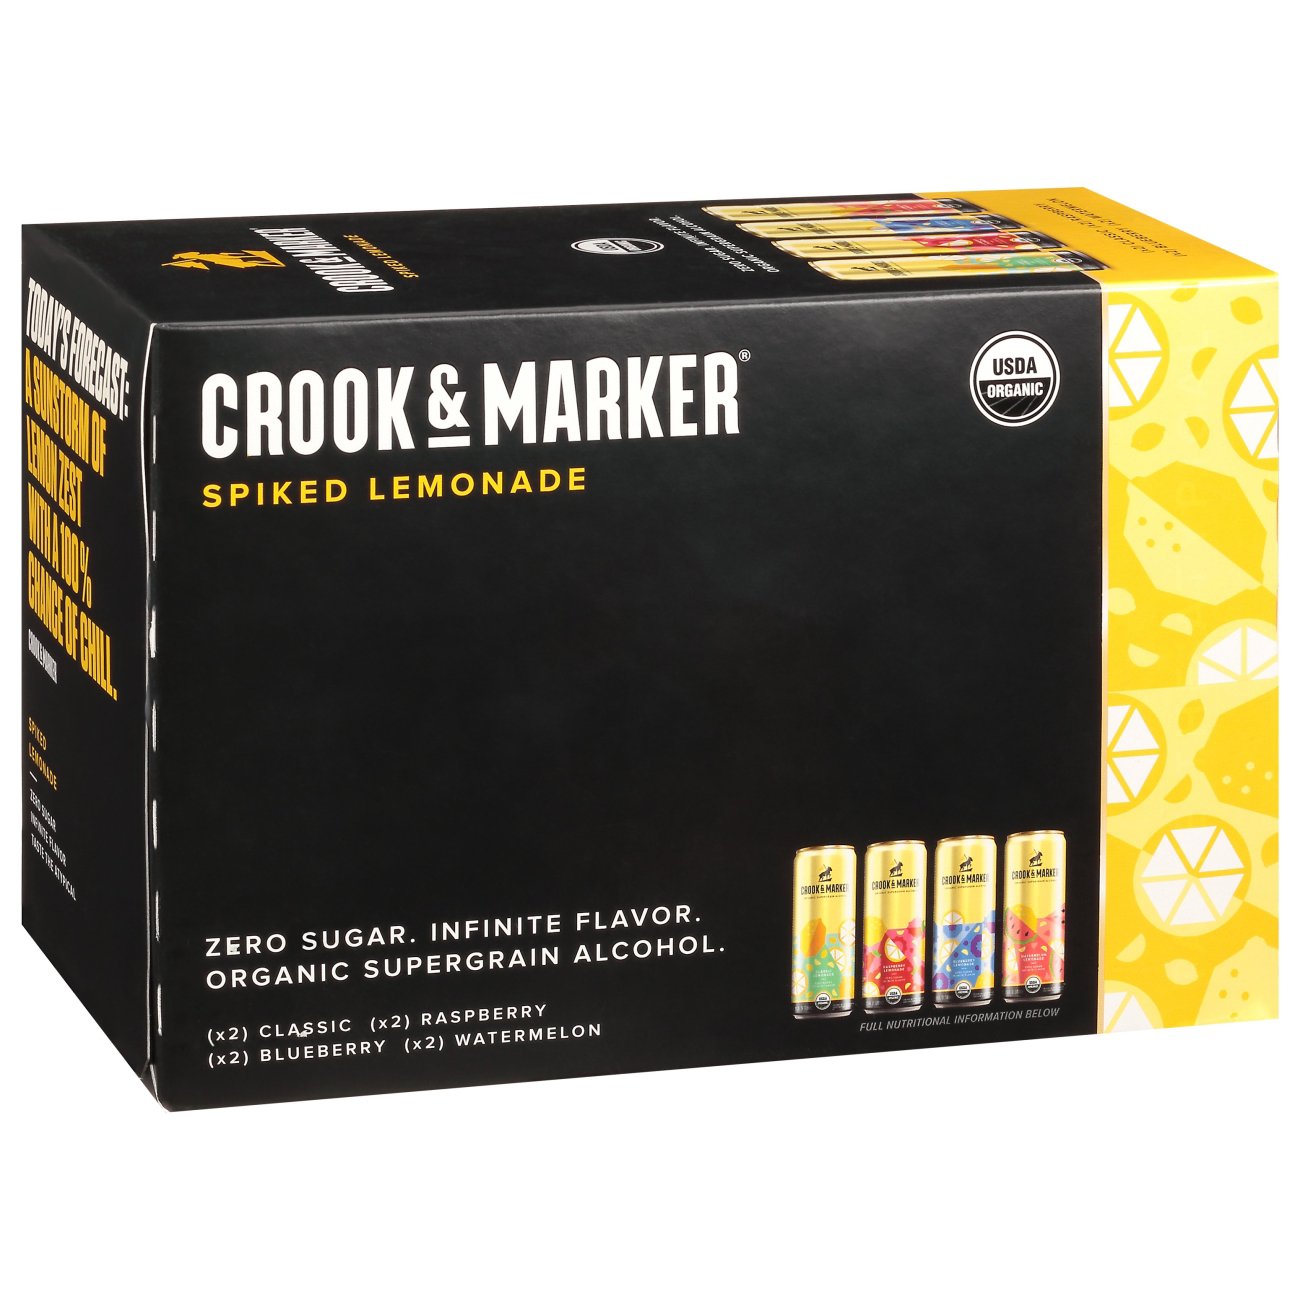 crook-marker-spiked-lemonade-variety-pack-11-5-oz-cans-shop-malt